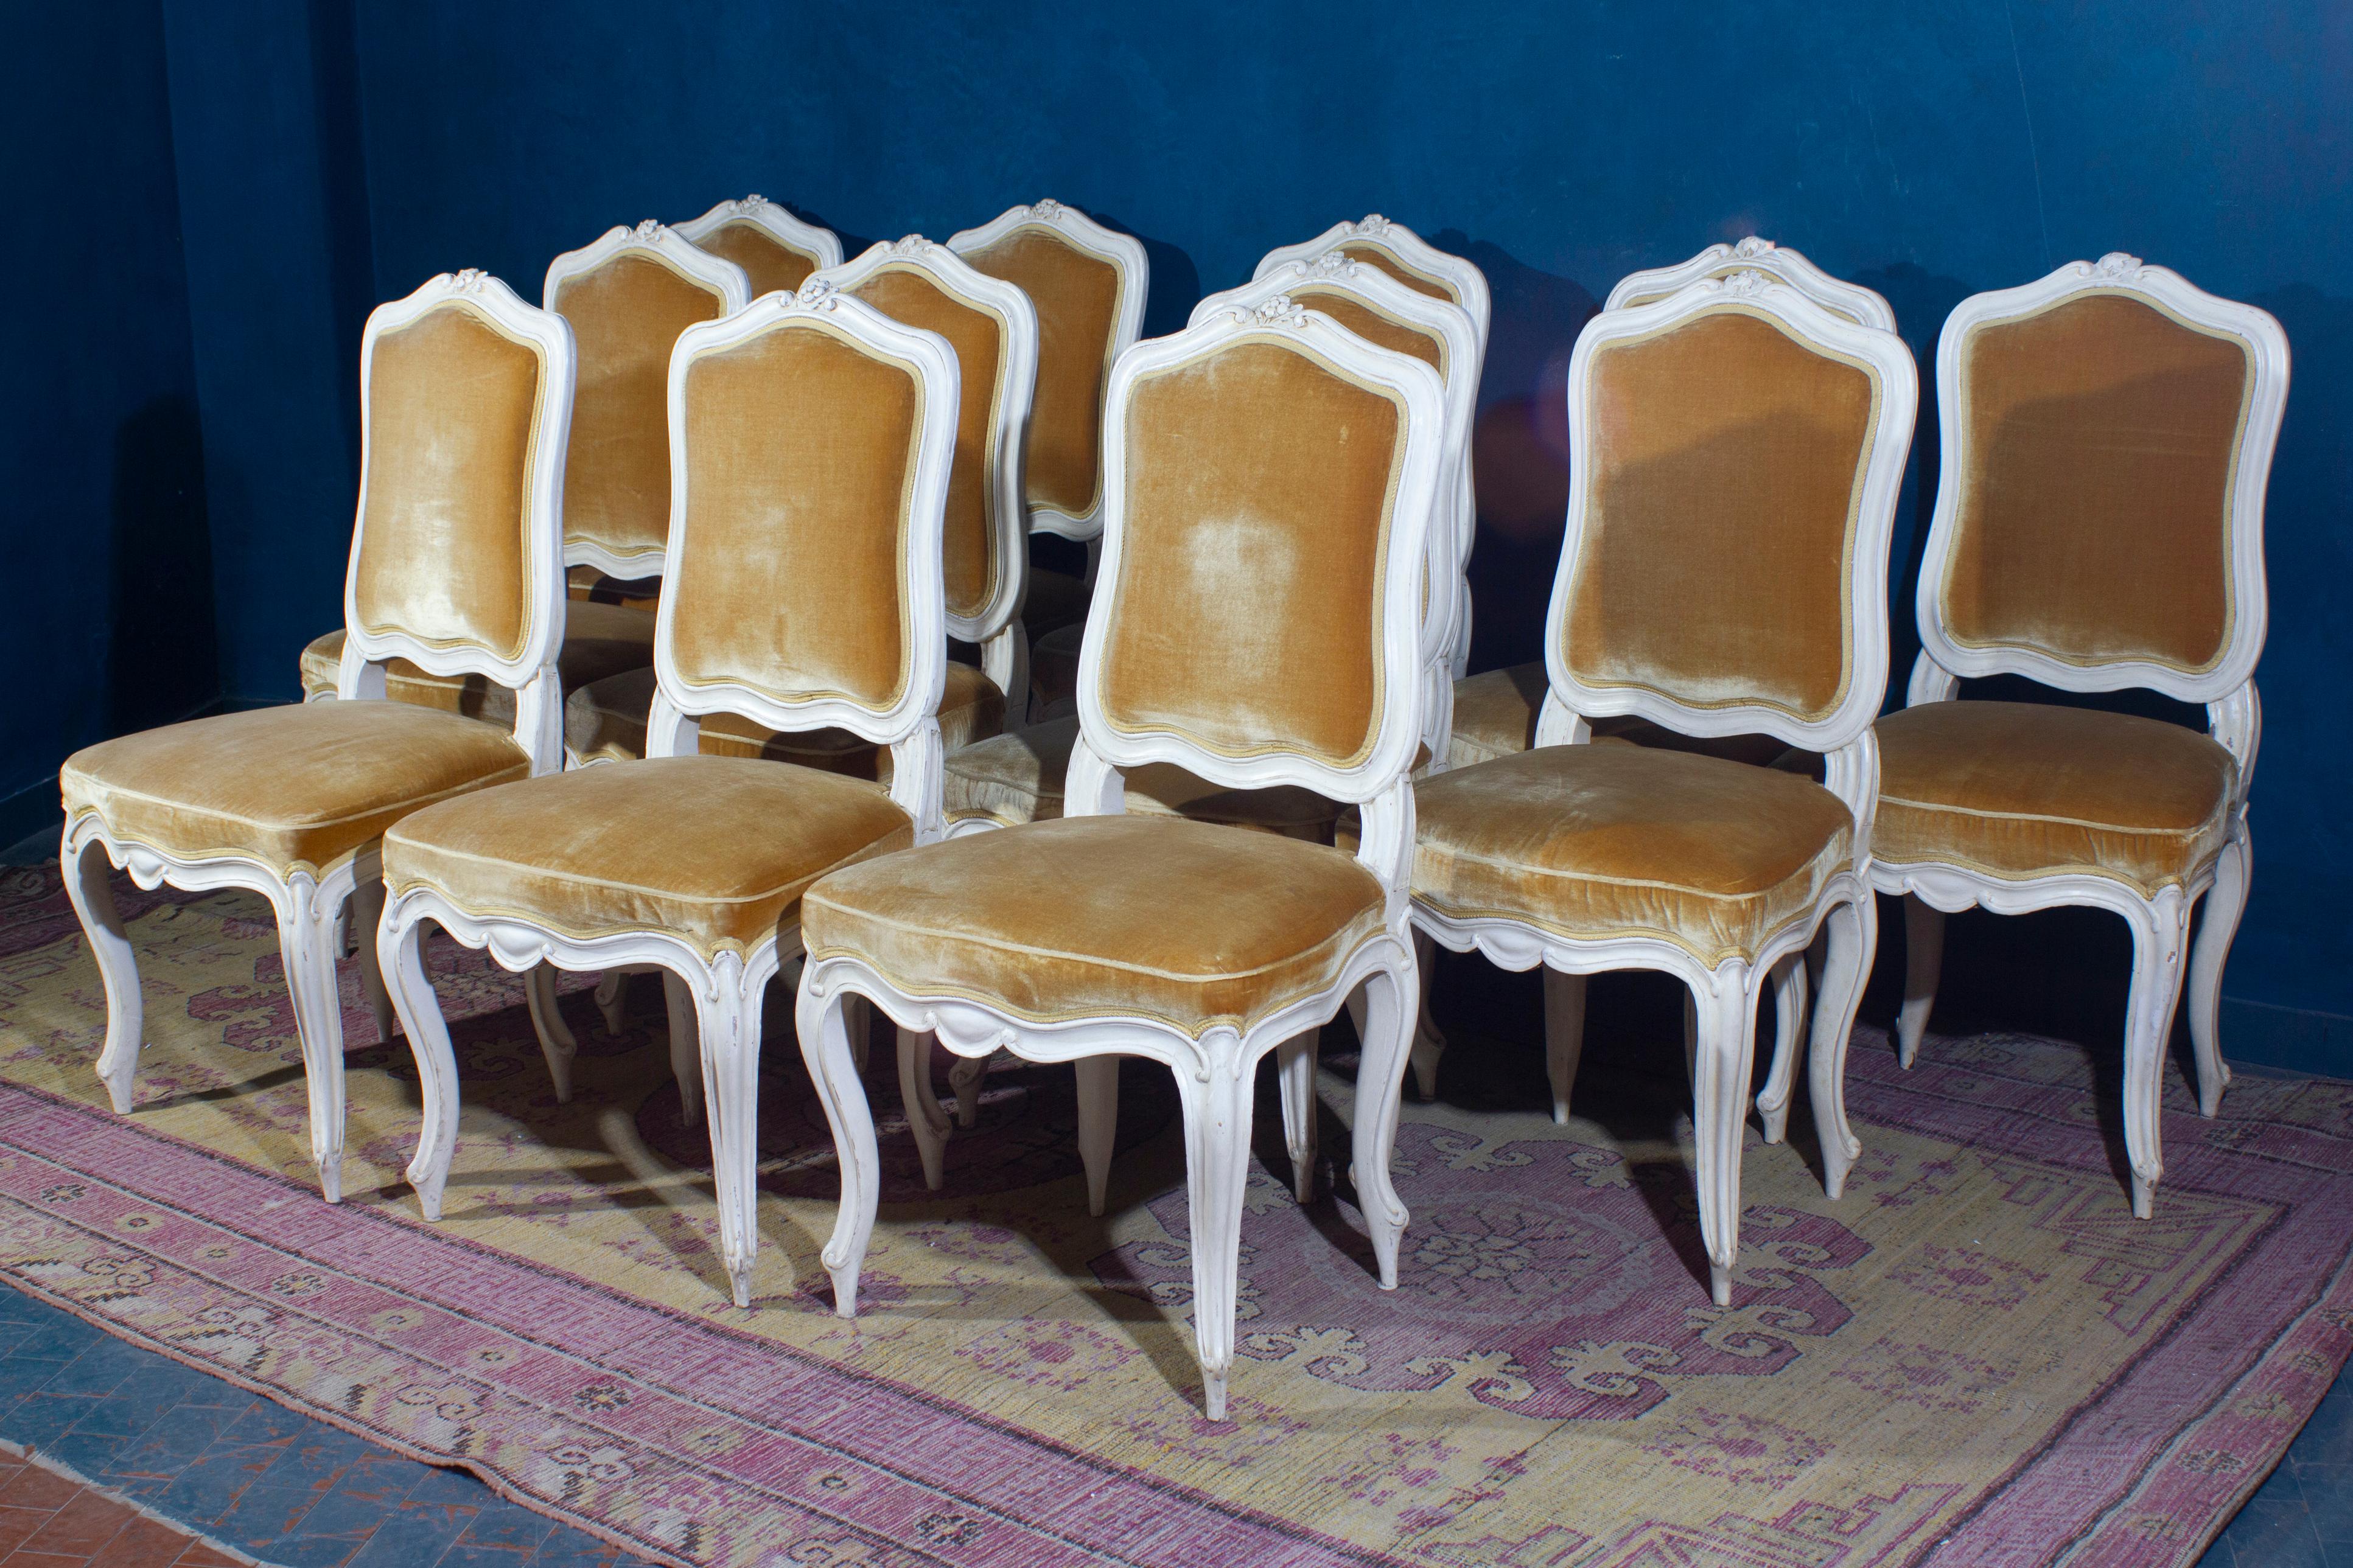 Ein feiner Satz von 12 französischen elfenbeinfarbenen Stühlen mit goldfarbenem kostbarem Seidensamtbezug in sehr gutem Zustand. 
6 Stühle sind original aus dem 18' Jahrhundert und 6 aus dem 20' Jahrhundert.

